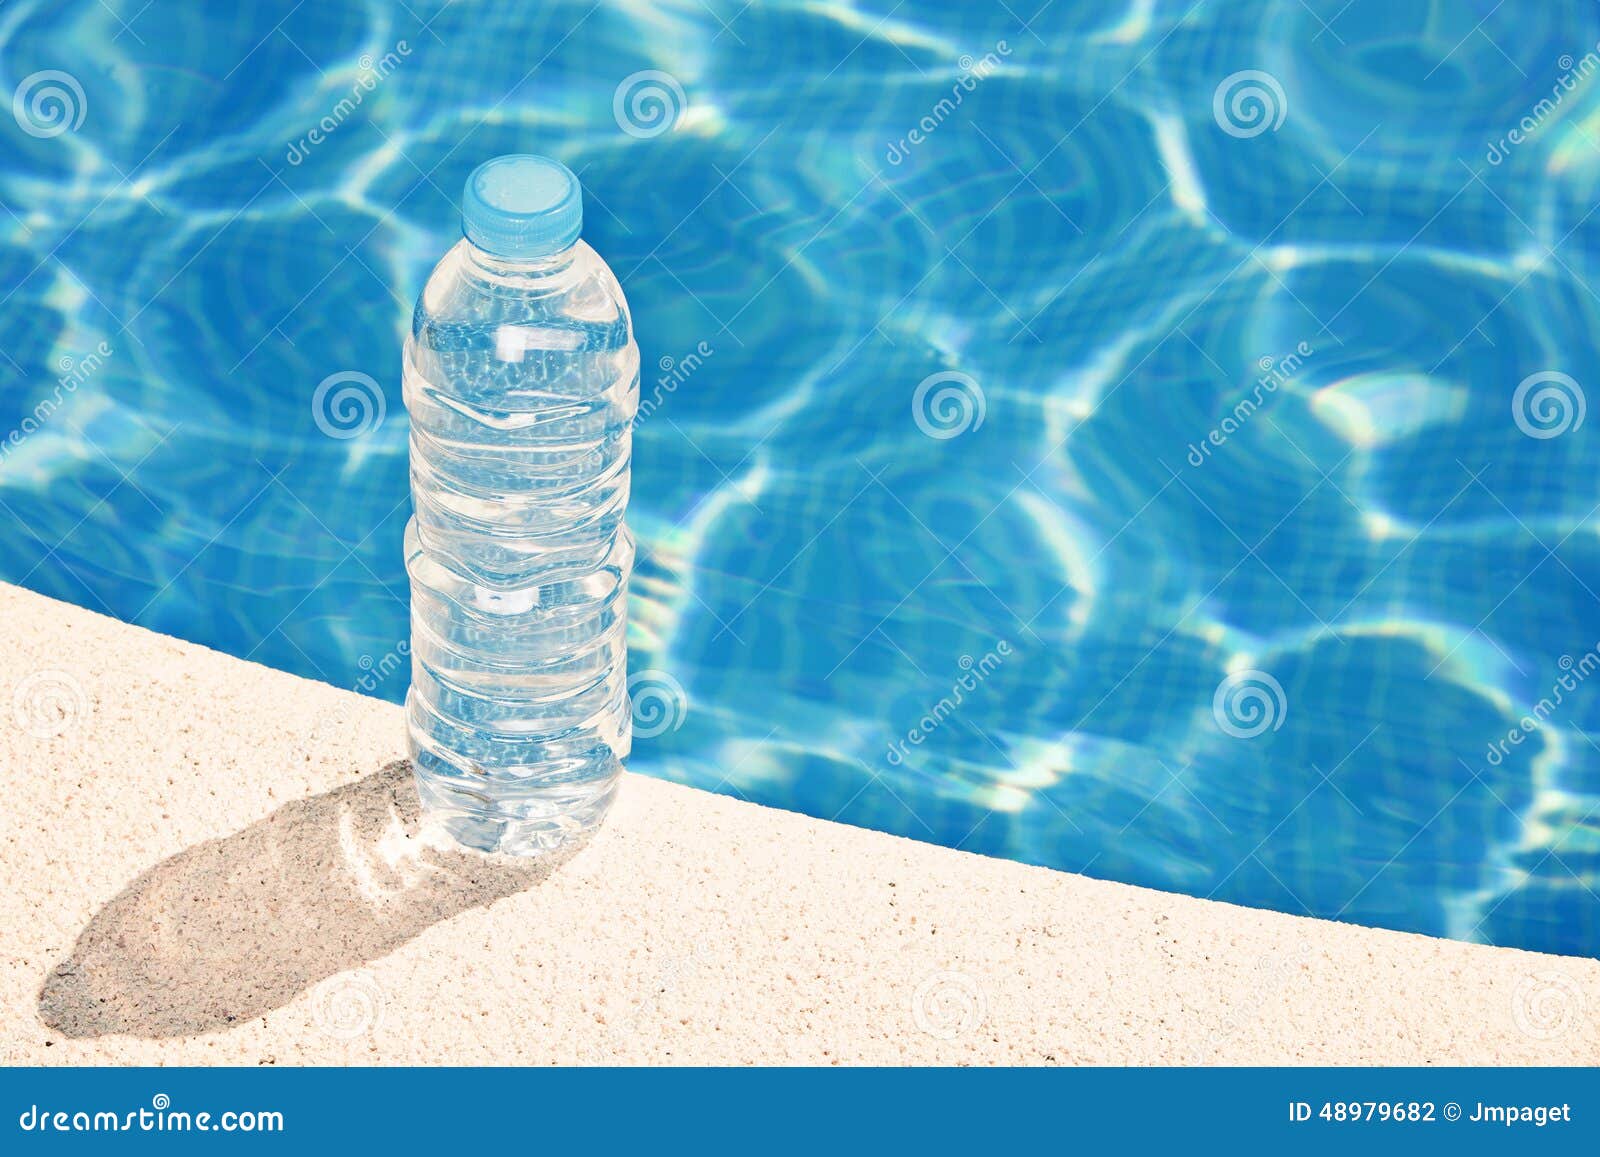 Почему бутылка наполнена водой. Бутылка для воды. Бутылка воды на столе. Бутылка воды в бассейне. Вода в бутылочках на столе.